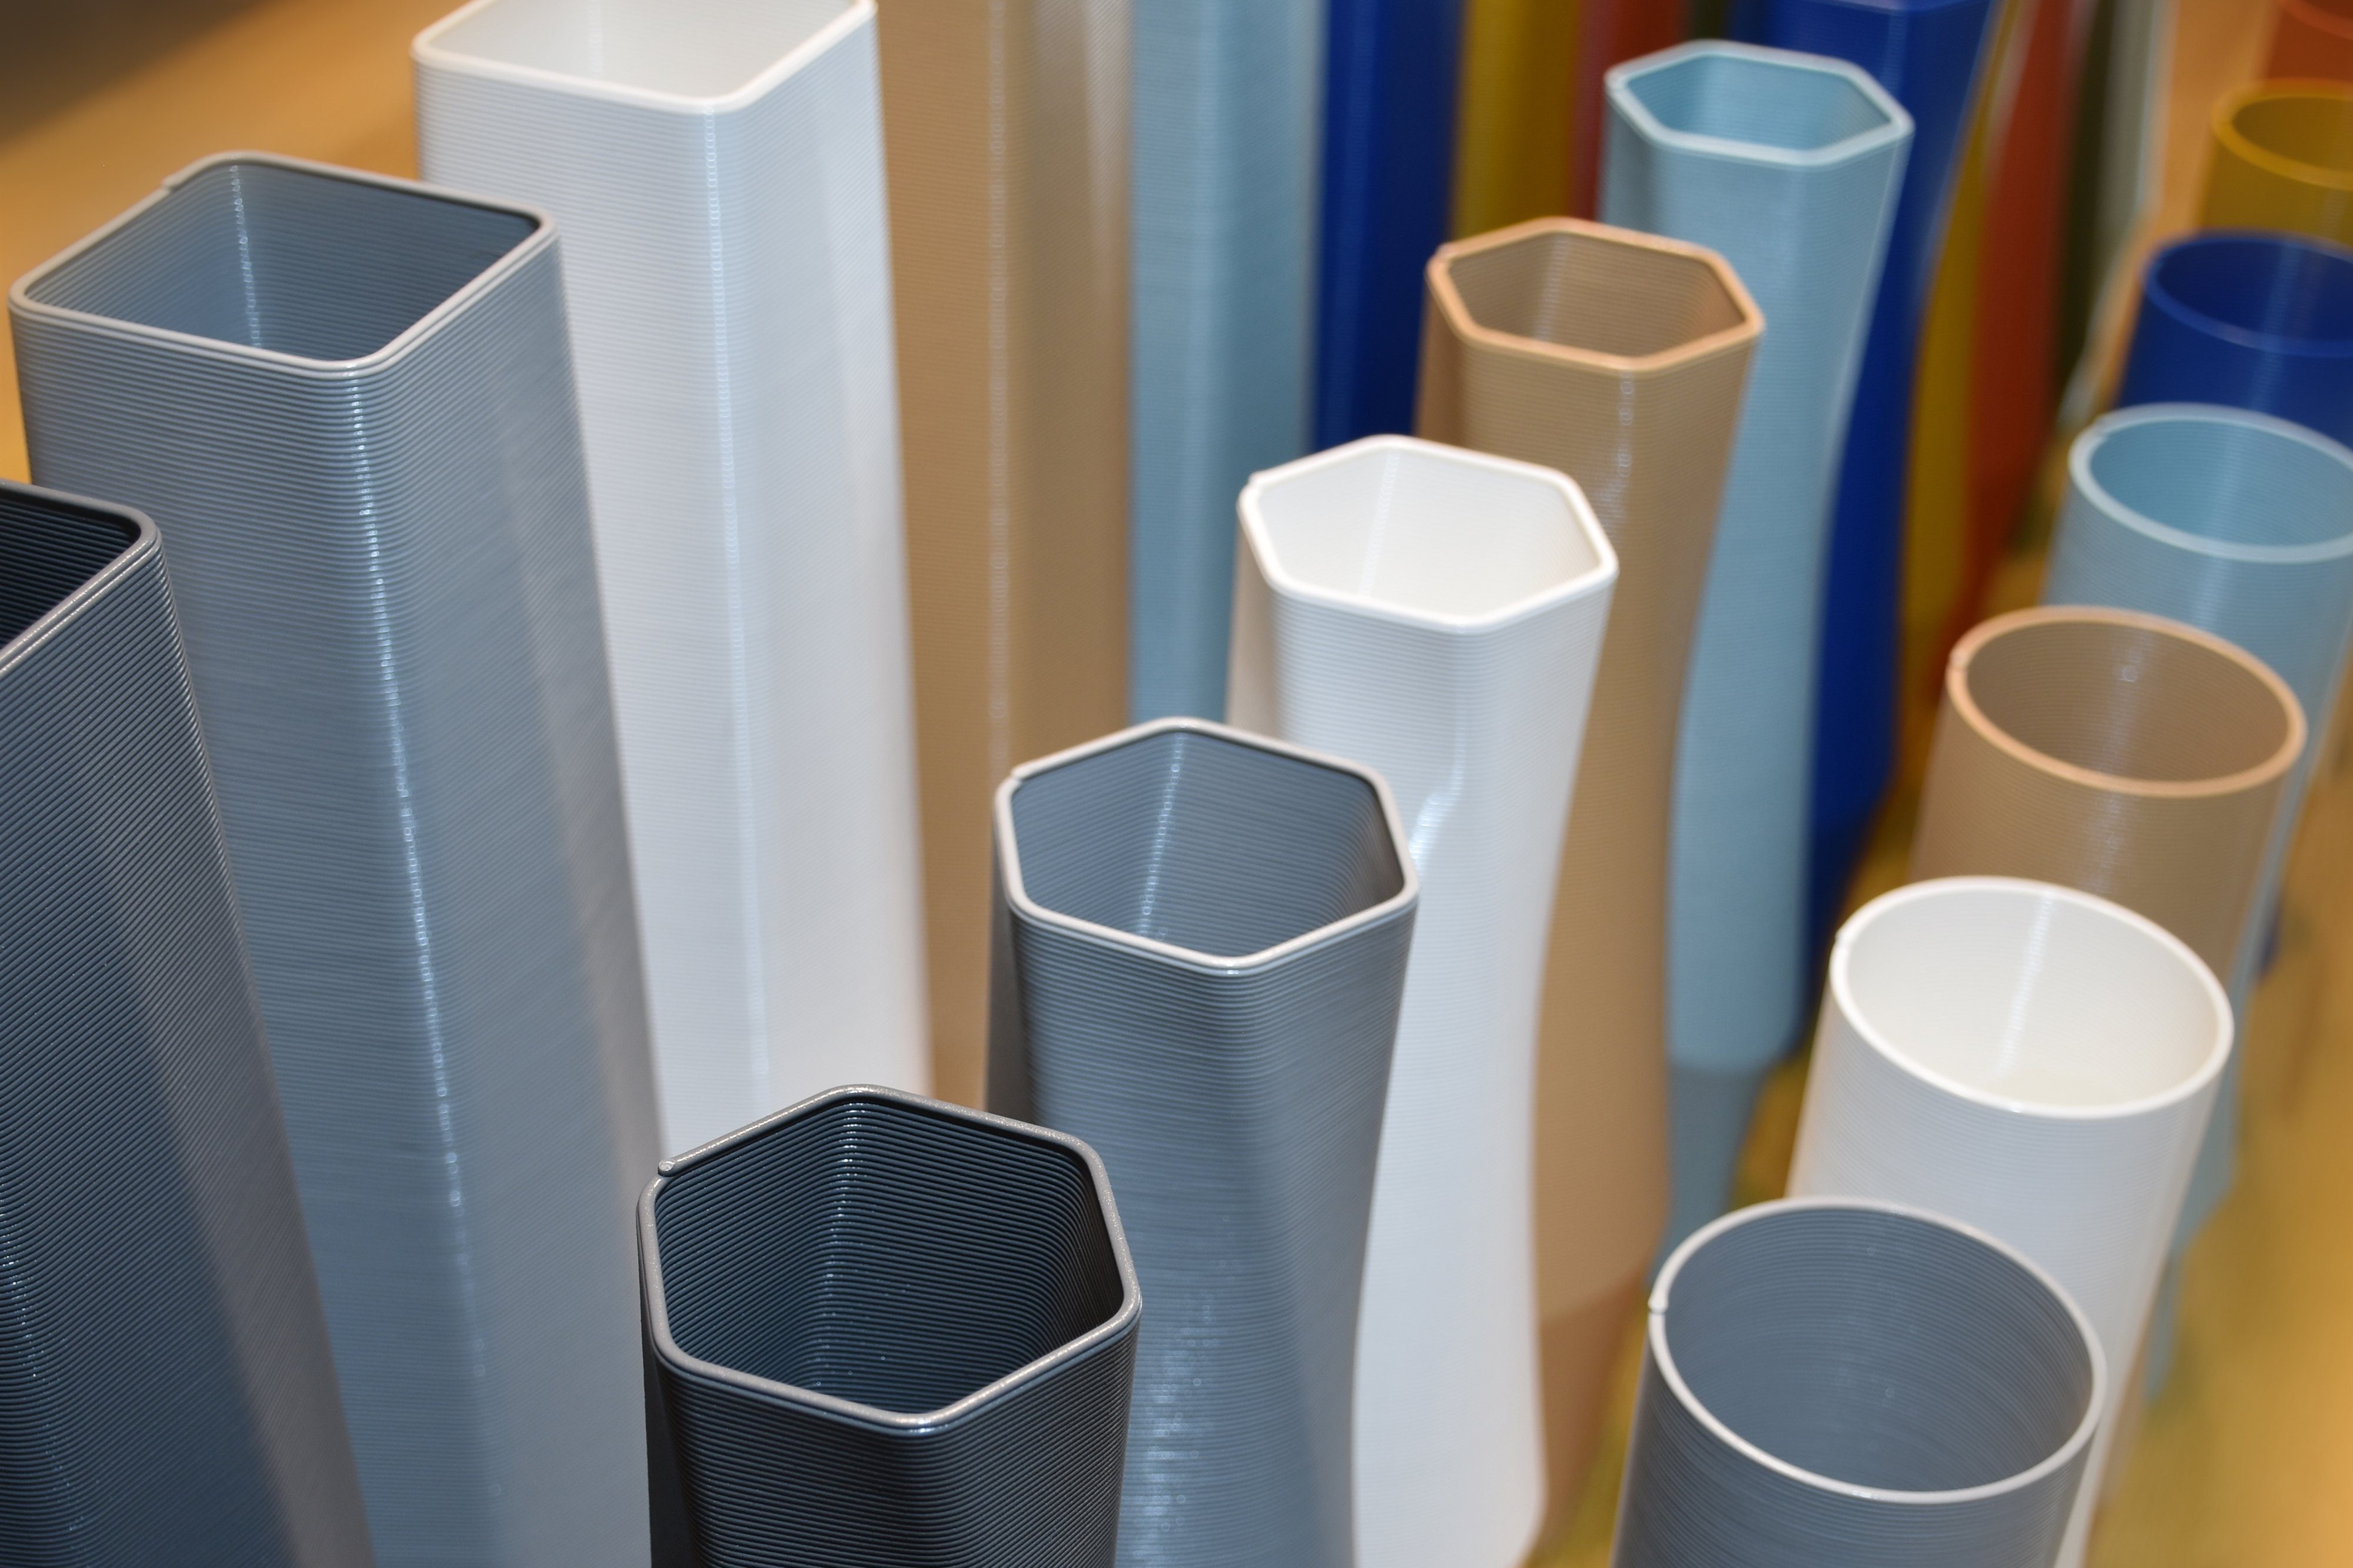 Leichte innerhalb the square Materials - 100% Vase), (basic), Decorations viele (Einzelmodell, 3D-Druck Vasen, Struktur 1 3D Blau des Farben, Dekovase (Rillung) - vase Shapes Wasserdicht;